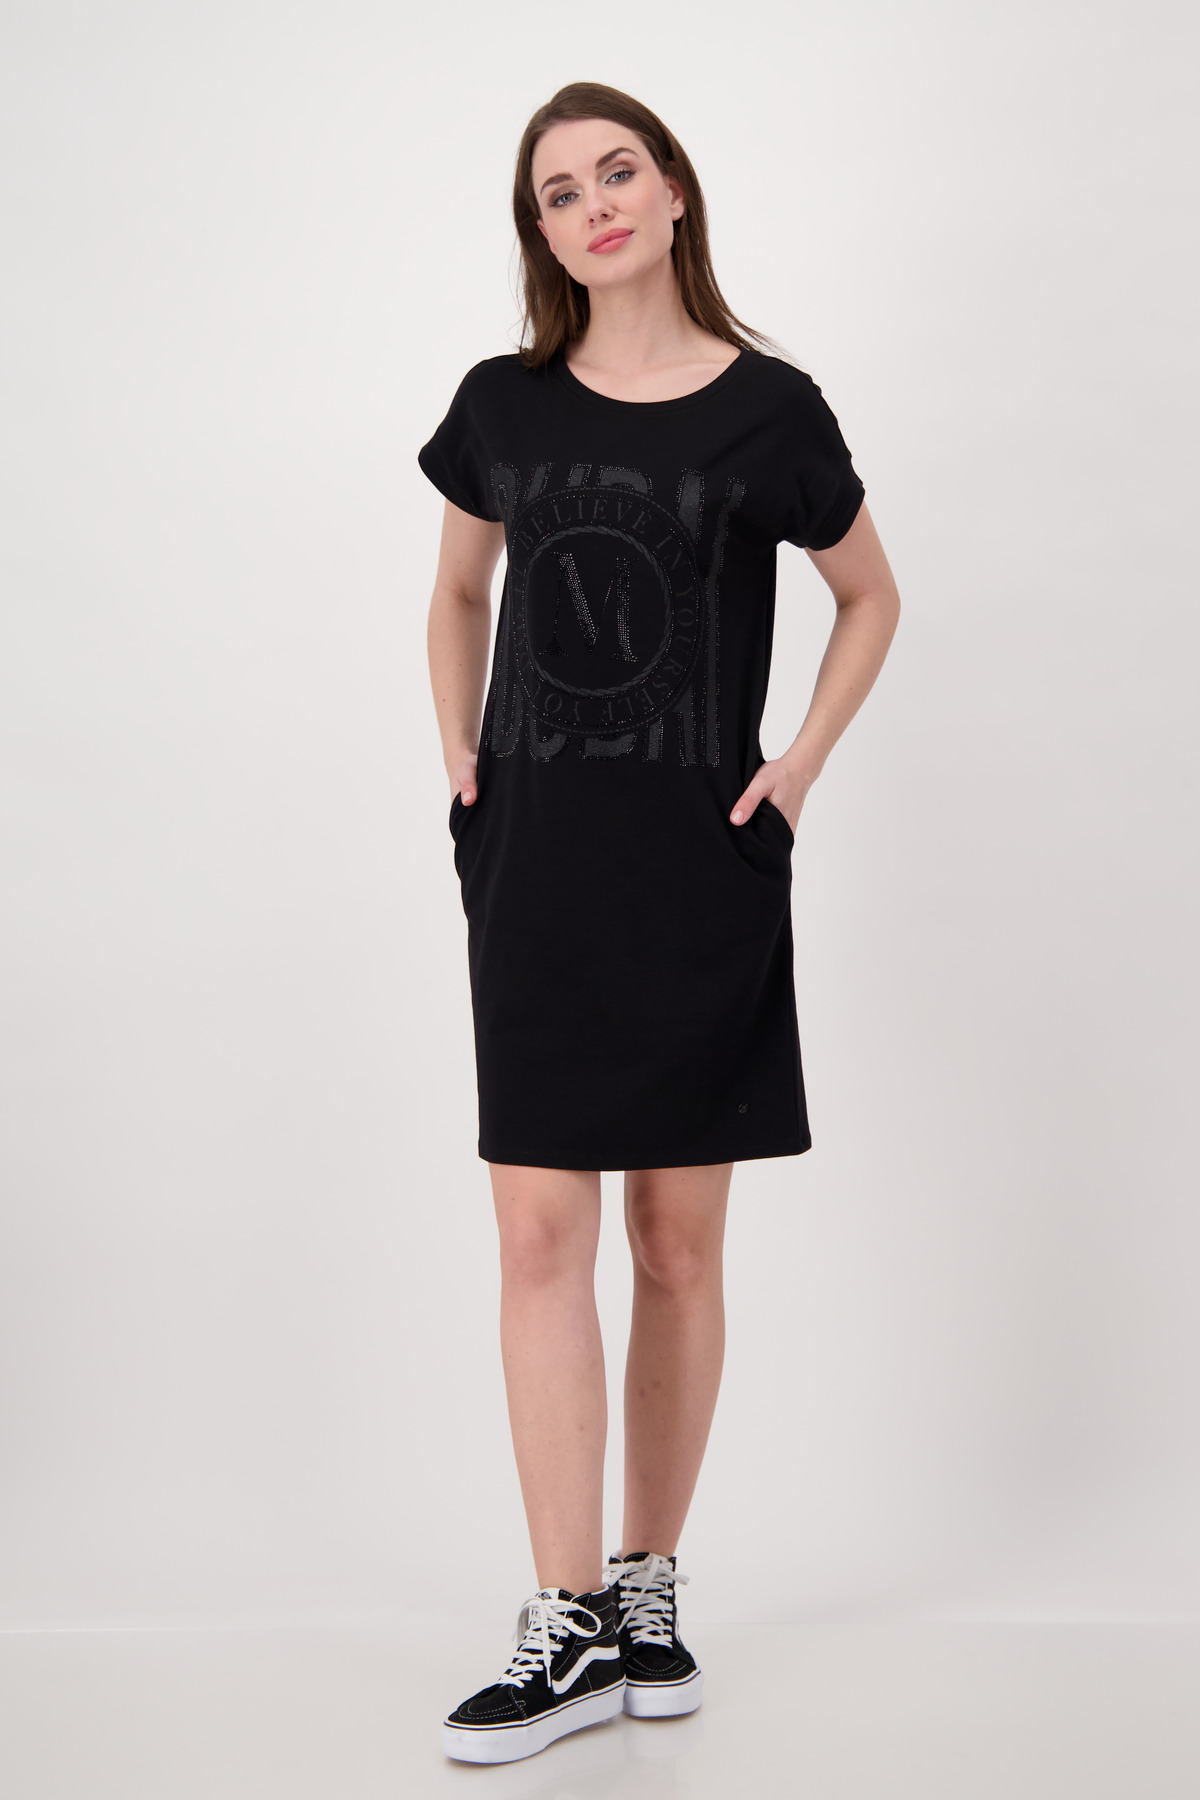 Monari Kleid, schwarz Mode - Hartmann Shop